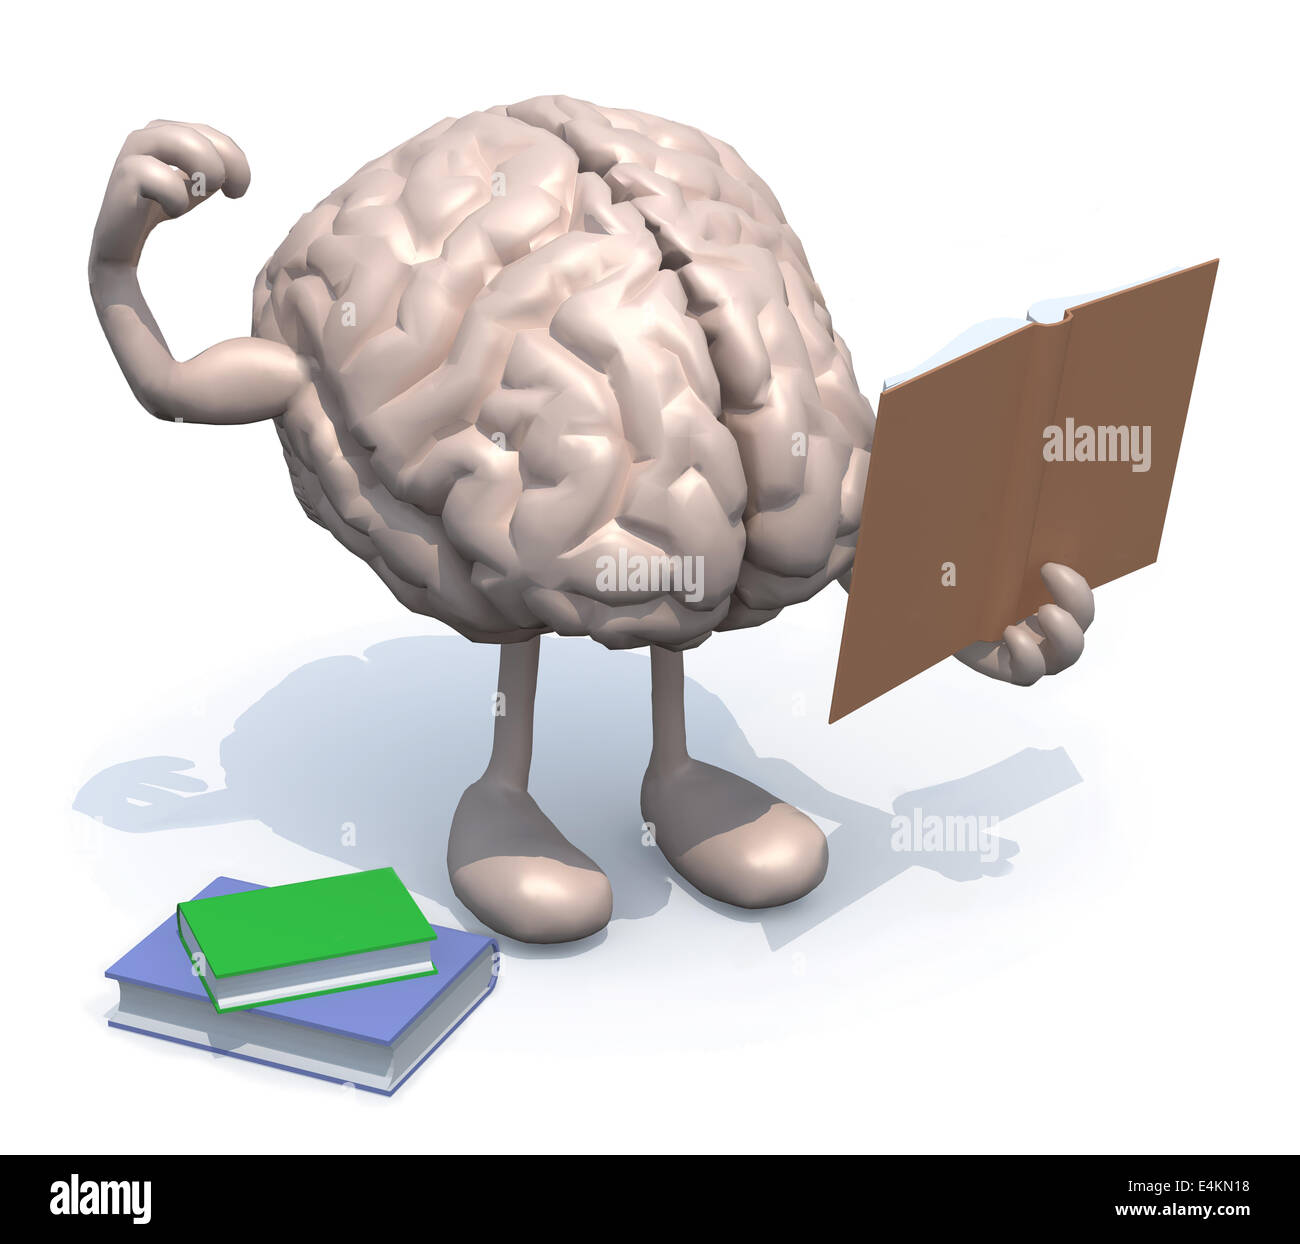 menschlichen Gehirns mit Armen, Beinen und viele Bücher auf der Seite macht Kulturbegriff. Stockfoto